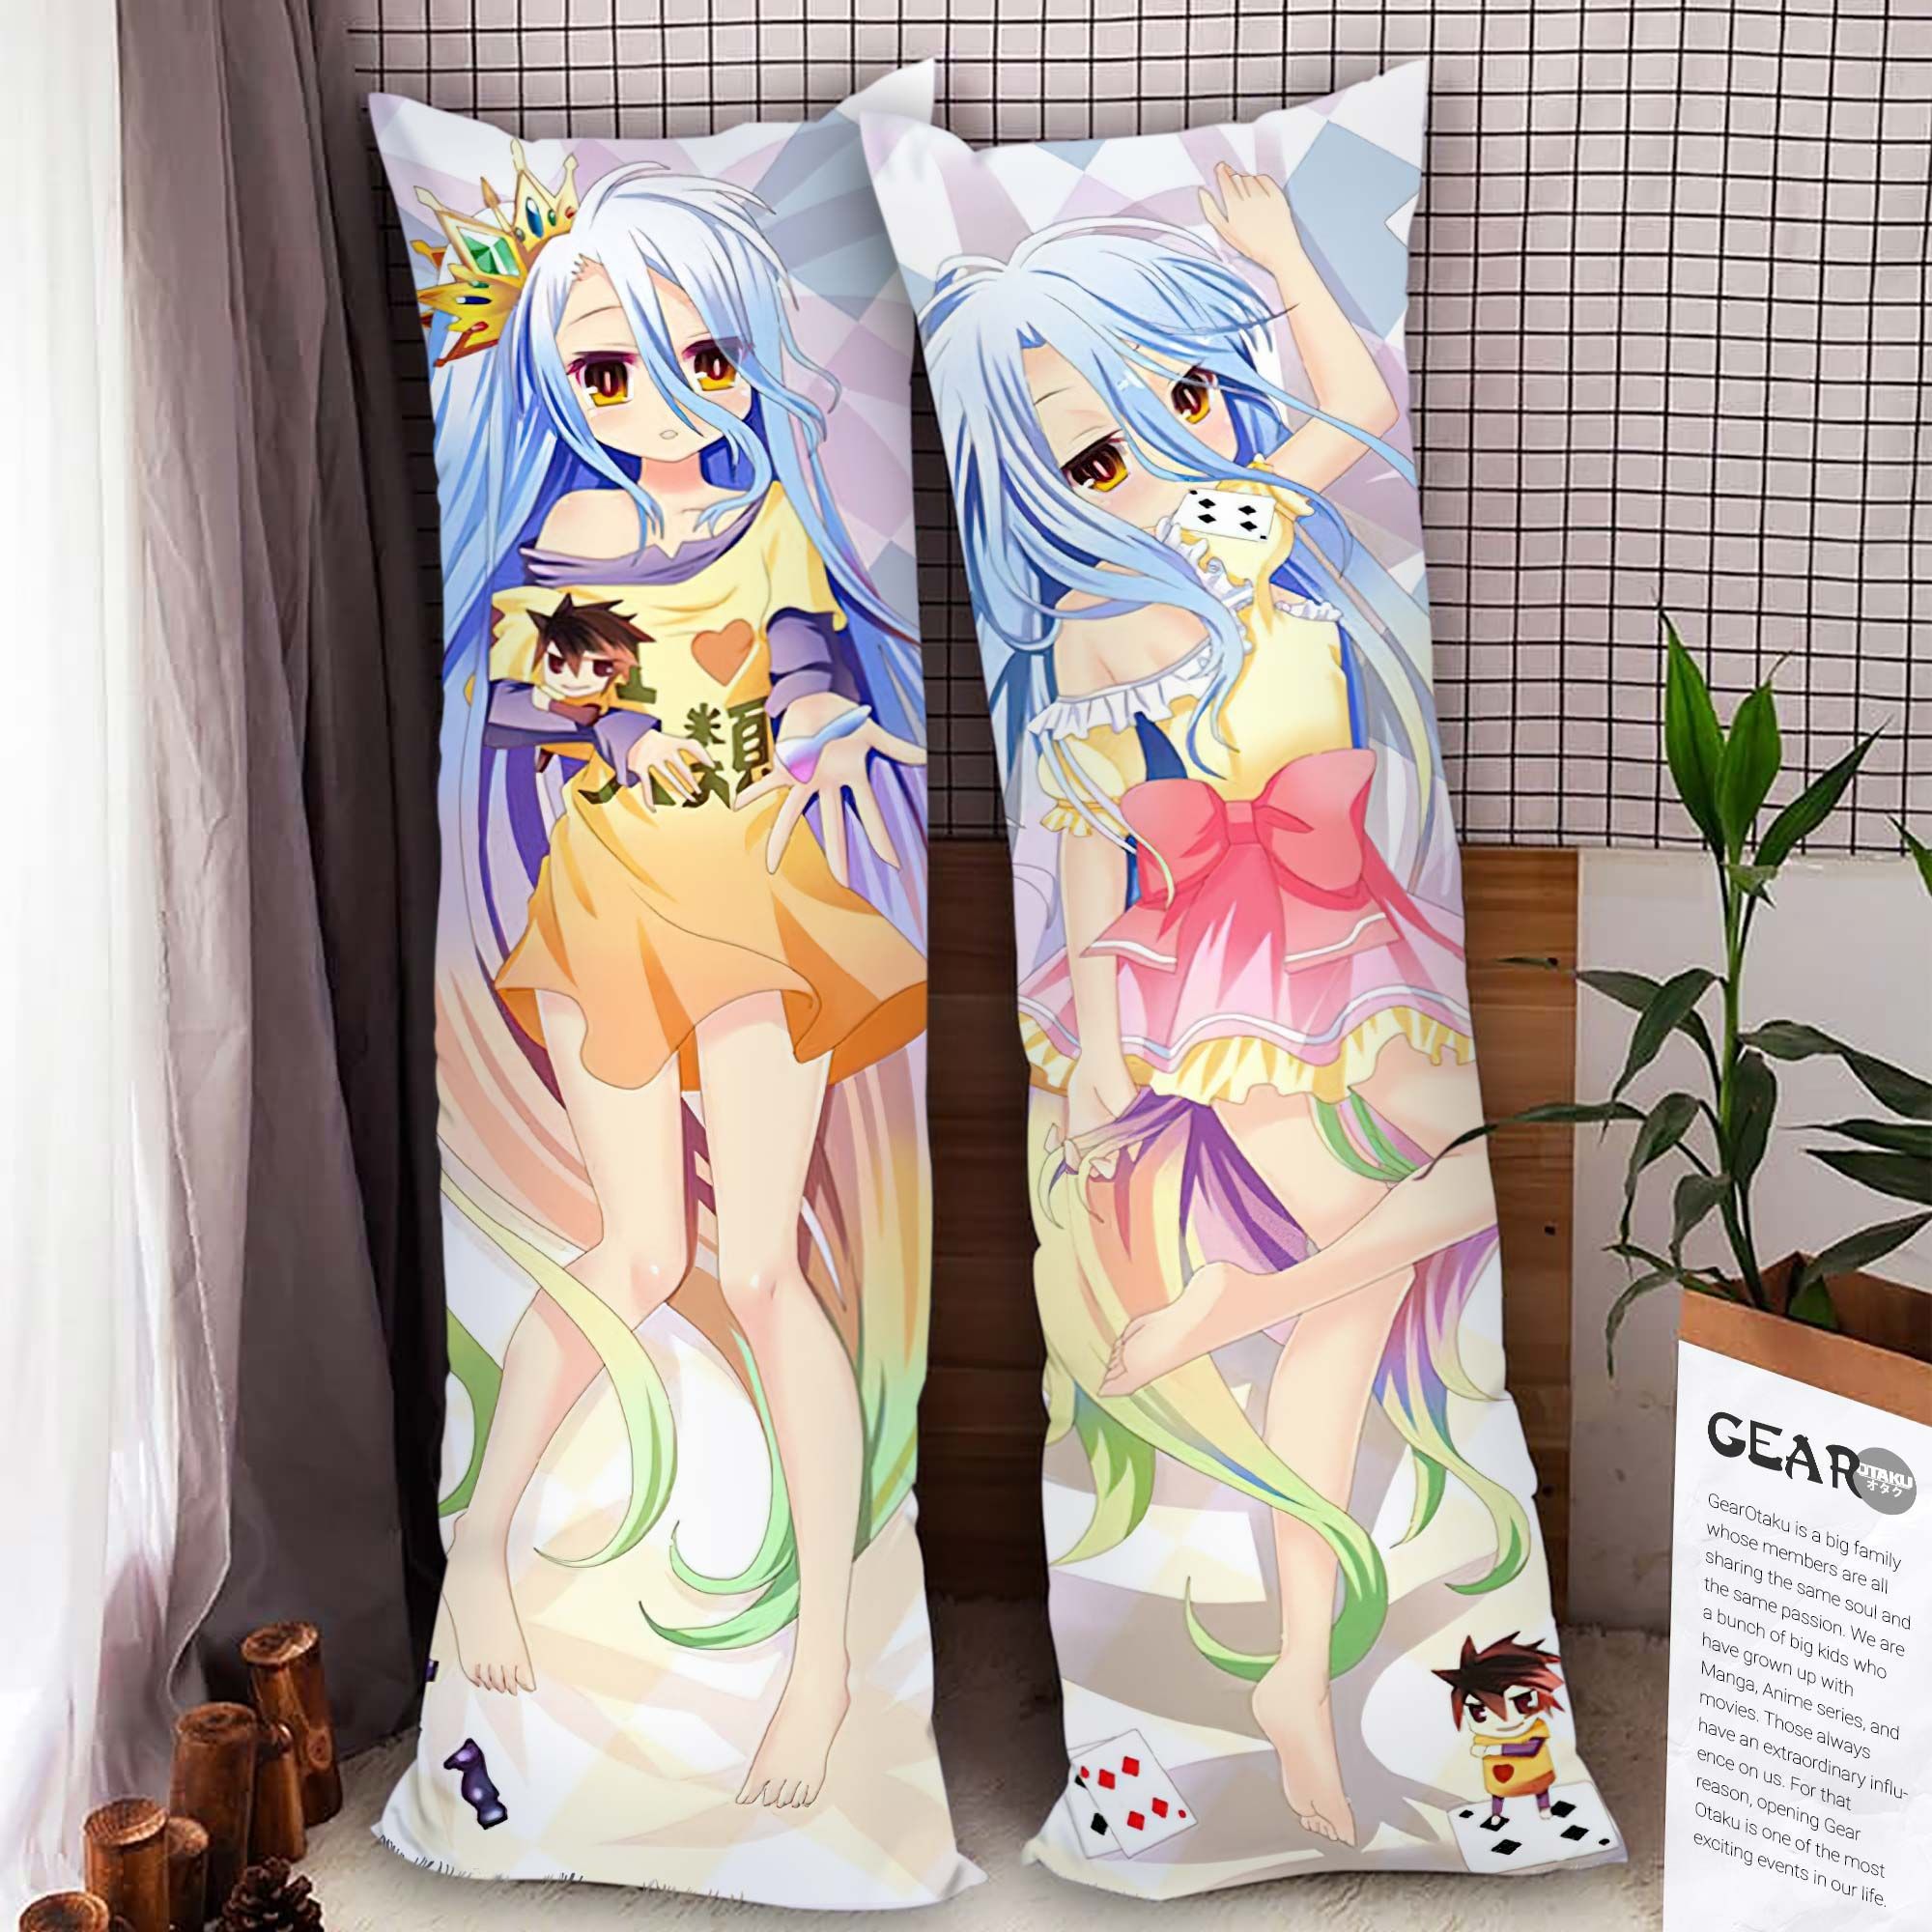 No Game No Life Shiro Body Pillow Cover Anime Gifts Idea For Otaku Girl Official Merch GO0110